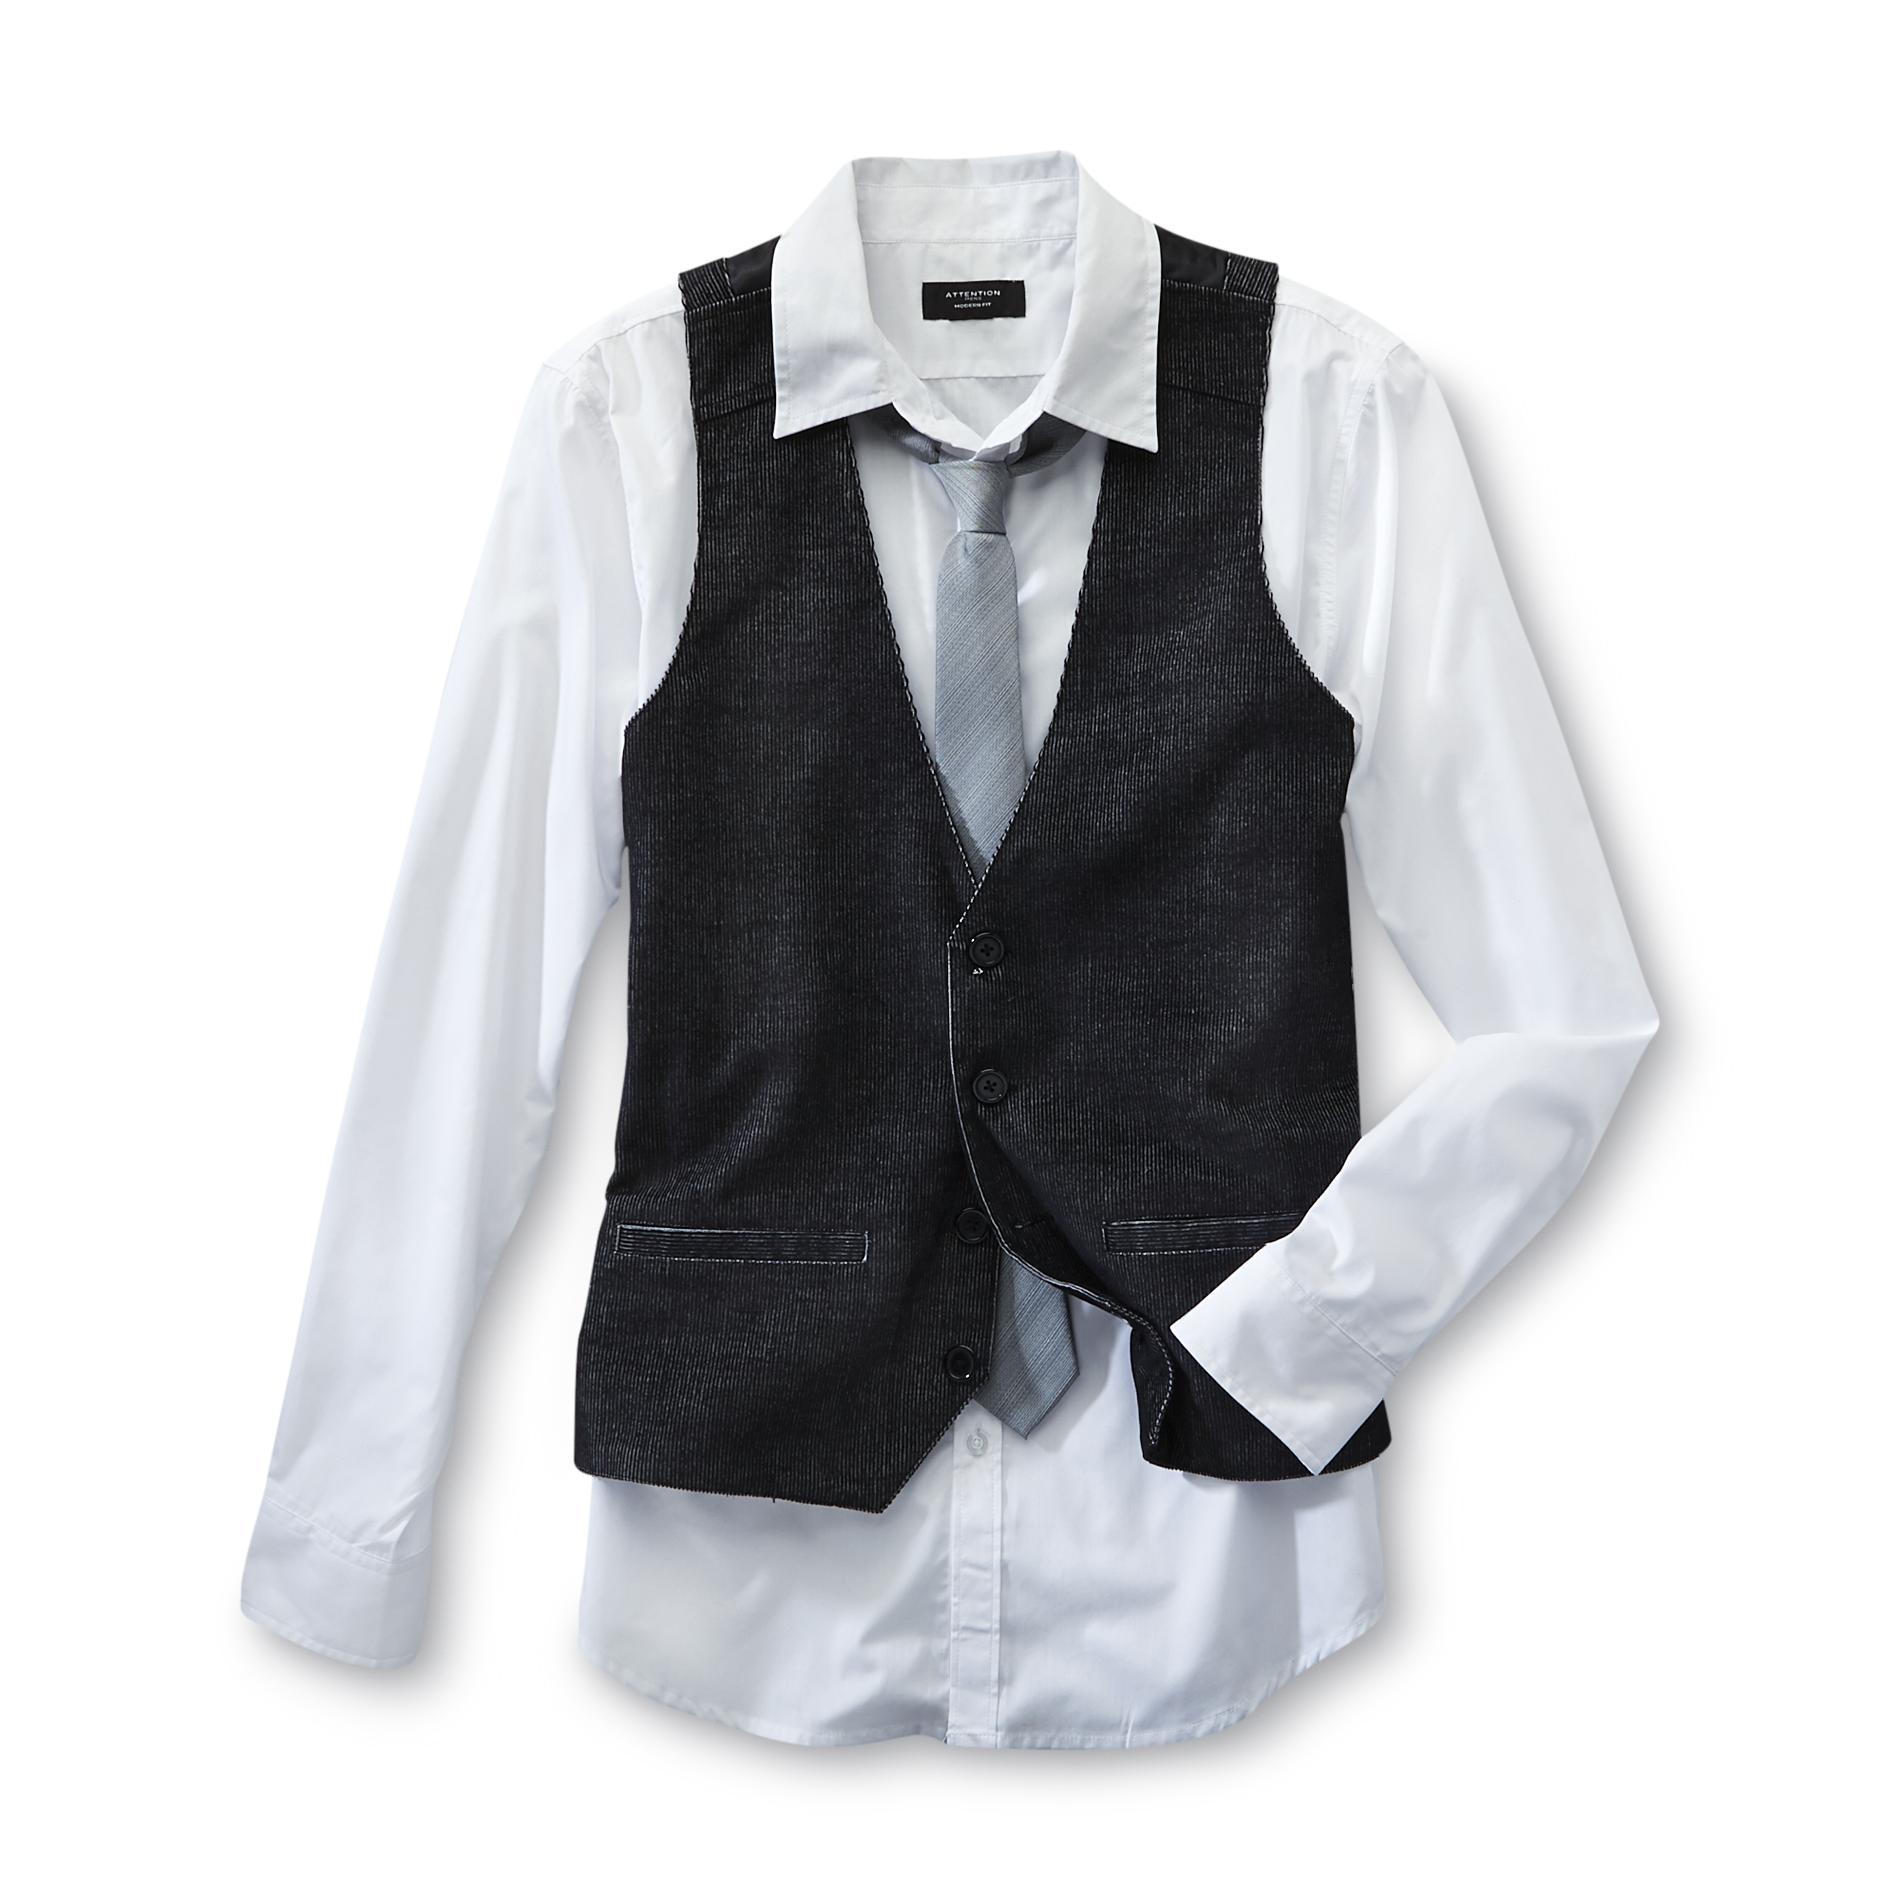 Attention Men's Dress Shirt  Vest & Tie